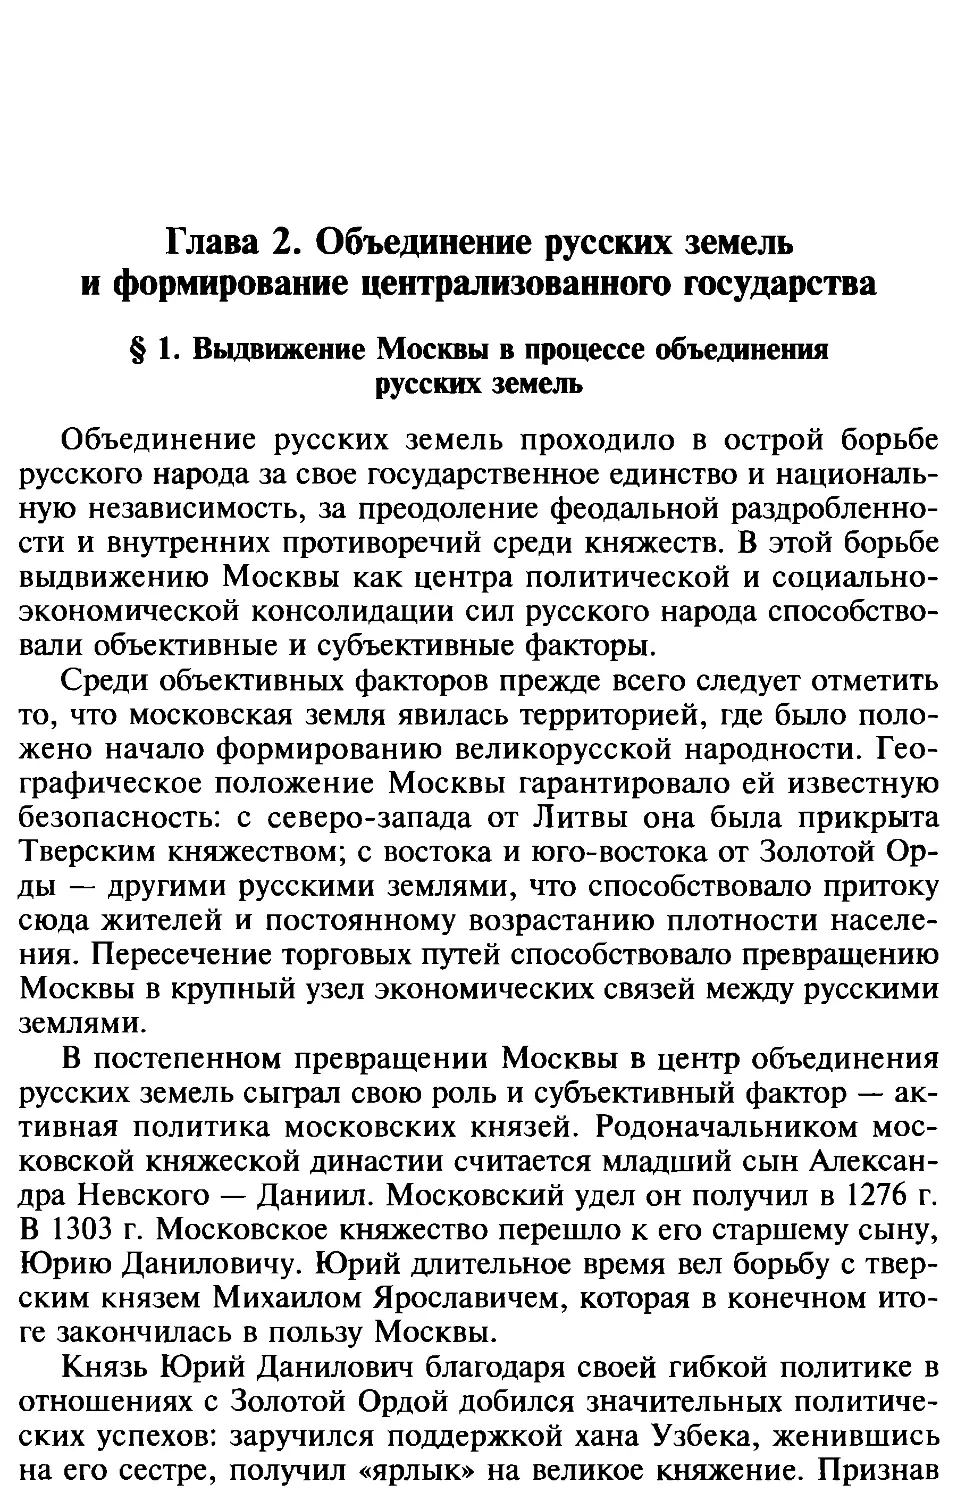 Глава 2. Объединение русских земель и формирование централизованного государства